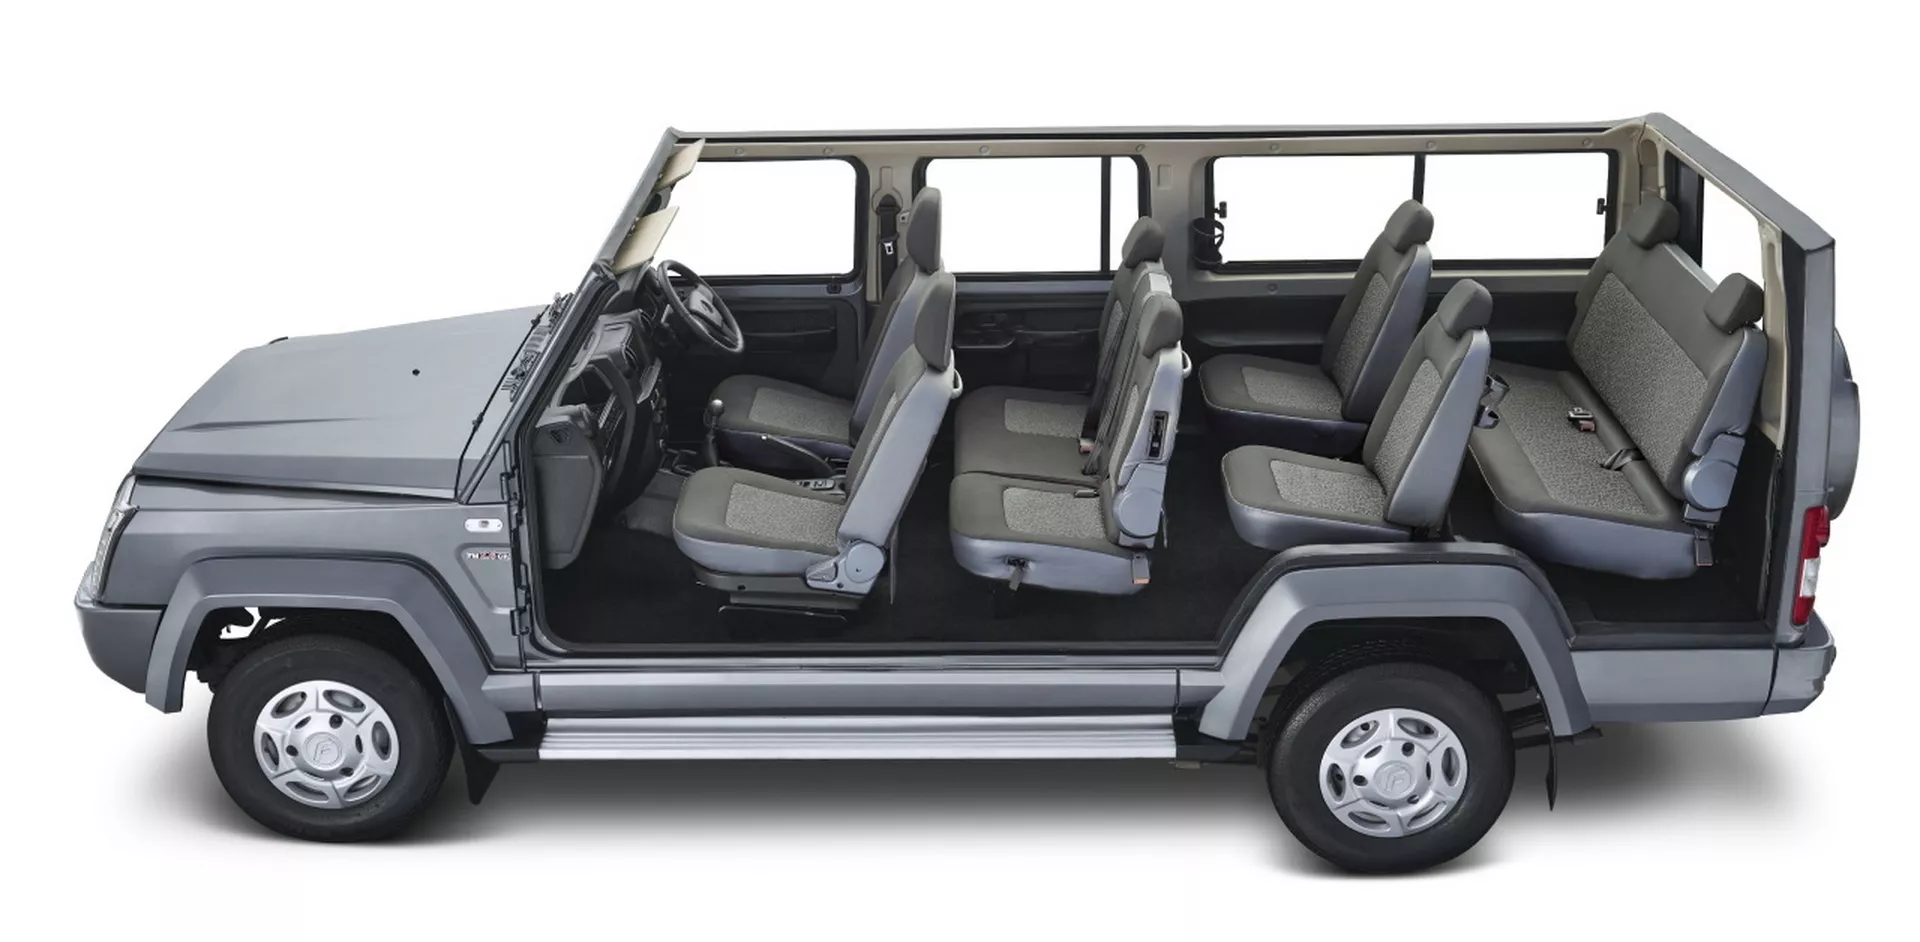 انطلاق SUV هندية عملاقة بـ 10 مقاعد وتصميم مستوحى من سيارات جي كلاس القديمة 10